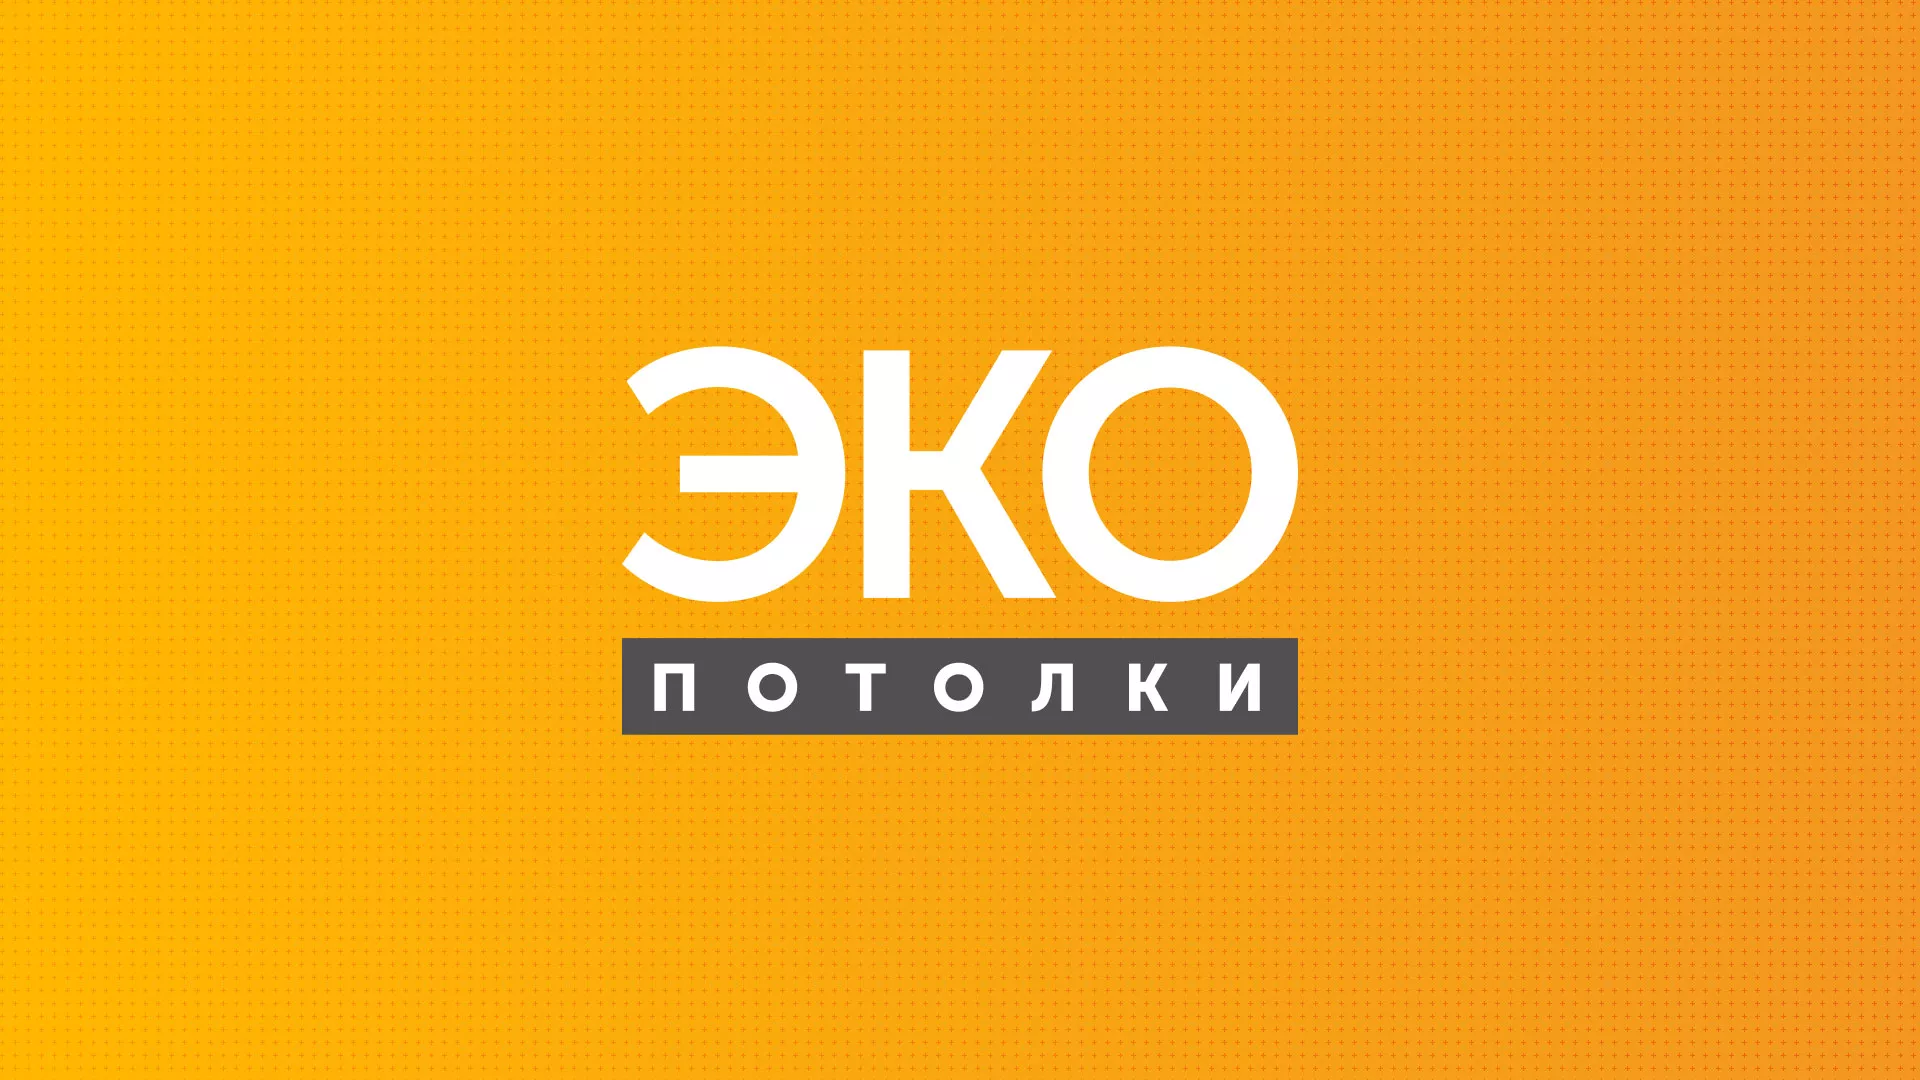 Разработка сайта по натяжным потолкам «Эко Потолки» в Усть-Лабинске